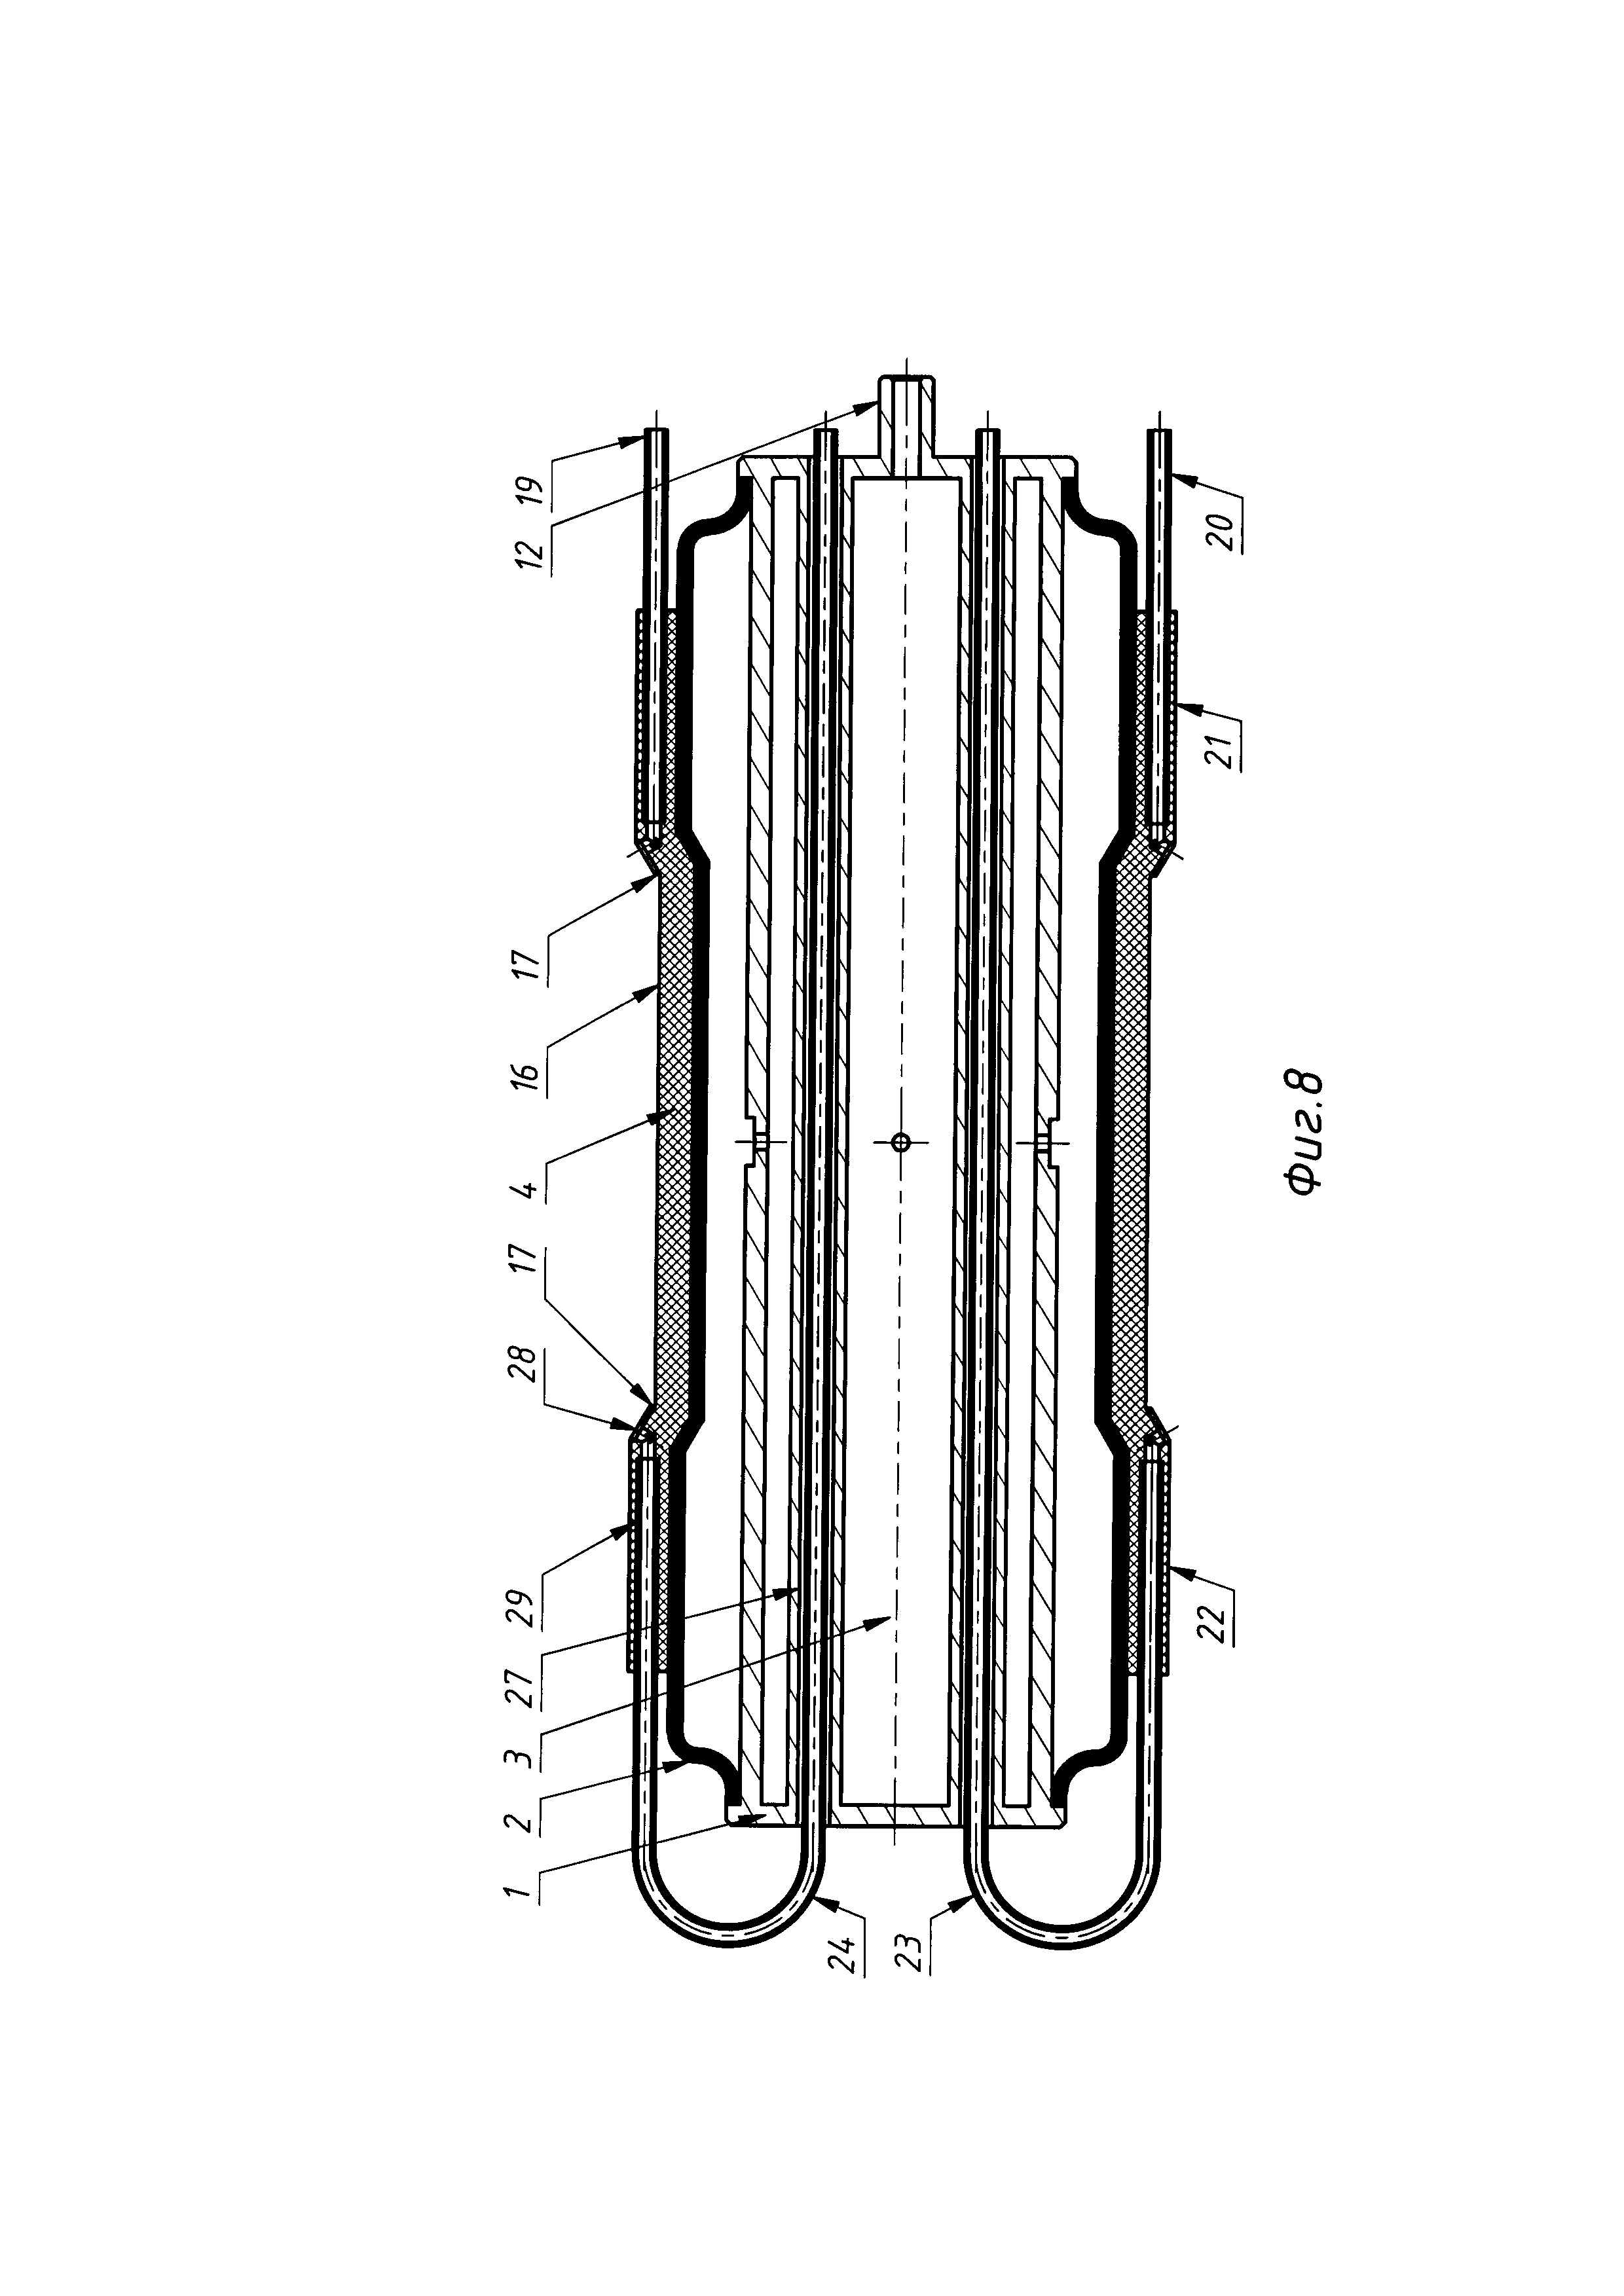 Устройство Чуйко для внутренней монолитной изоляции сварного соединения трубопровода (варианты)